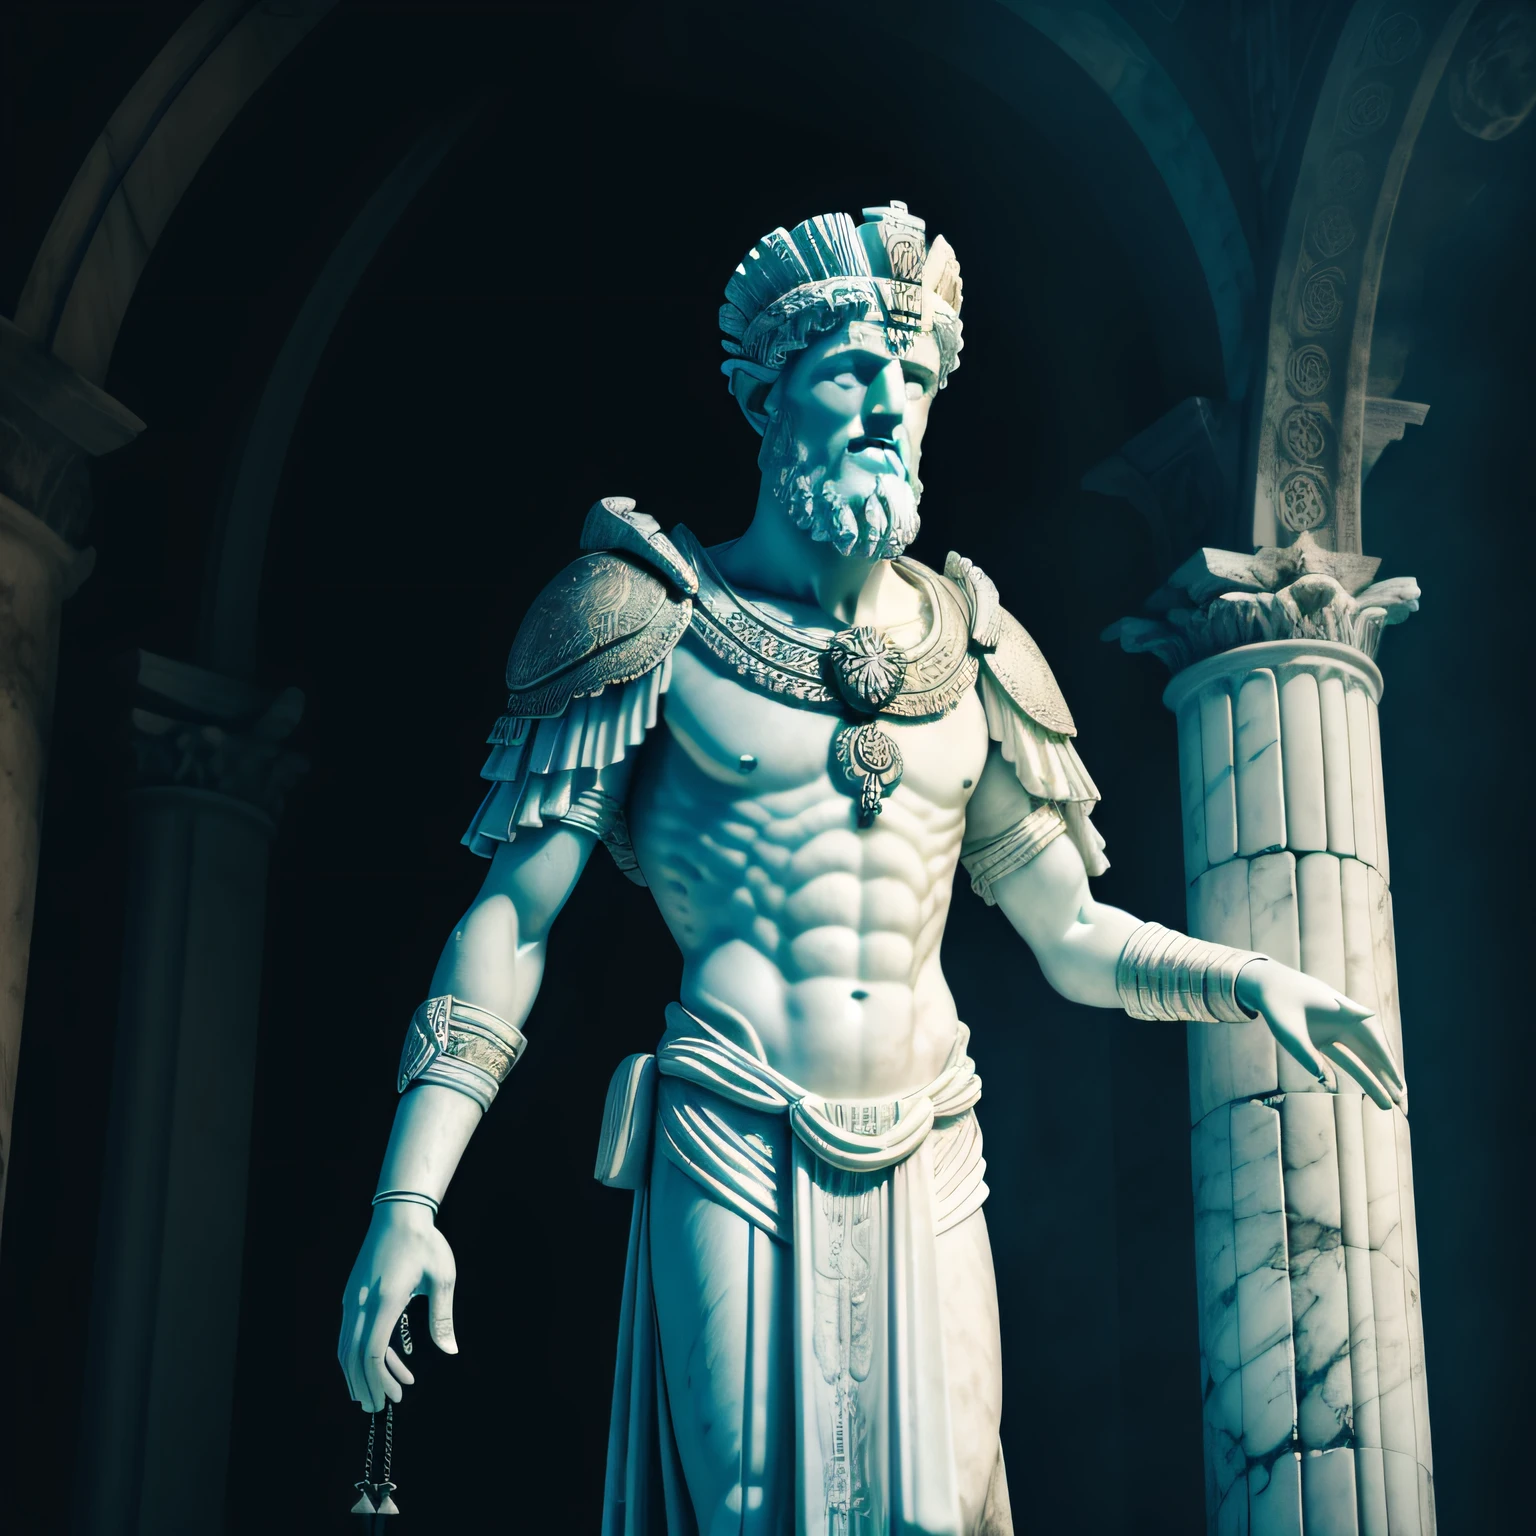 تمثال واقعي من الرخام الأبيض اليوناني بالطول الكامل لماركوس أوريليوس يرتدي توغا شبحية, خلفية محايدة, متقلب المزاج, , واقعية, مشهد سينمائي, مفصلة للغاية, واقعية مفرطة, أضواء ساطعة, خلفية نيون 8K